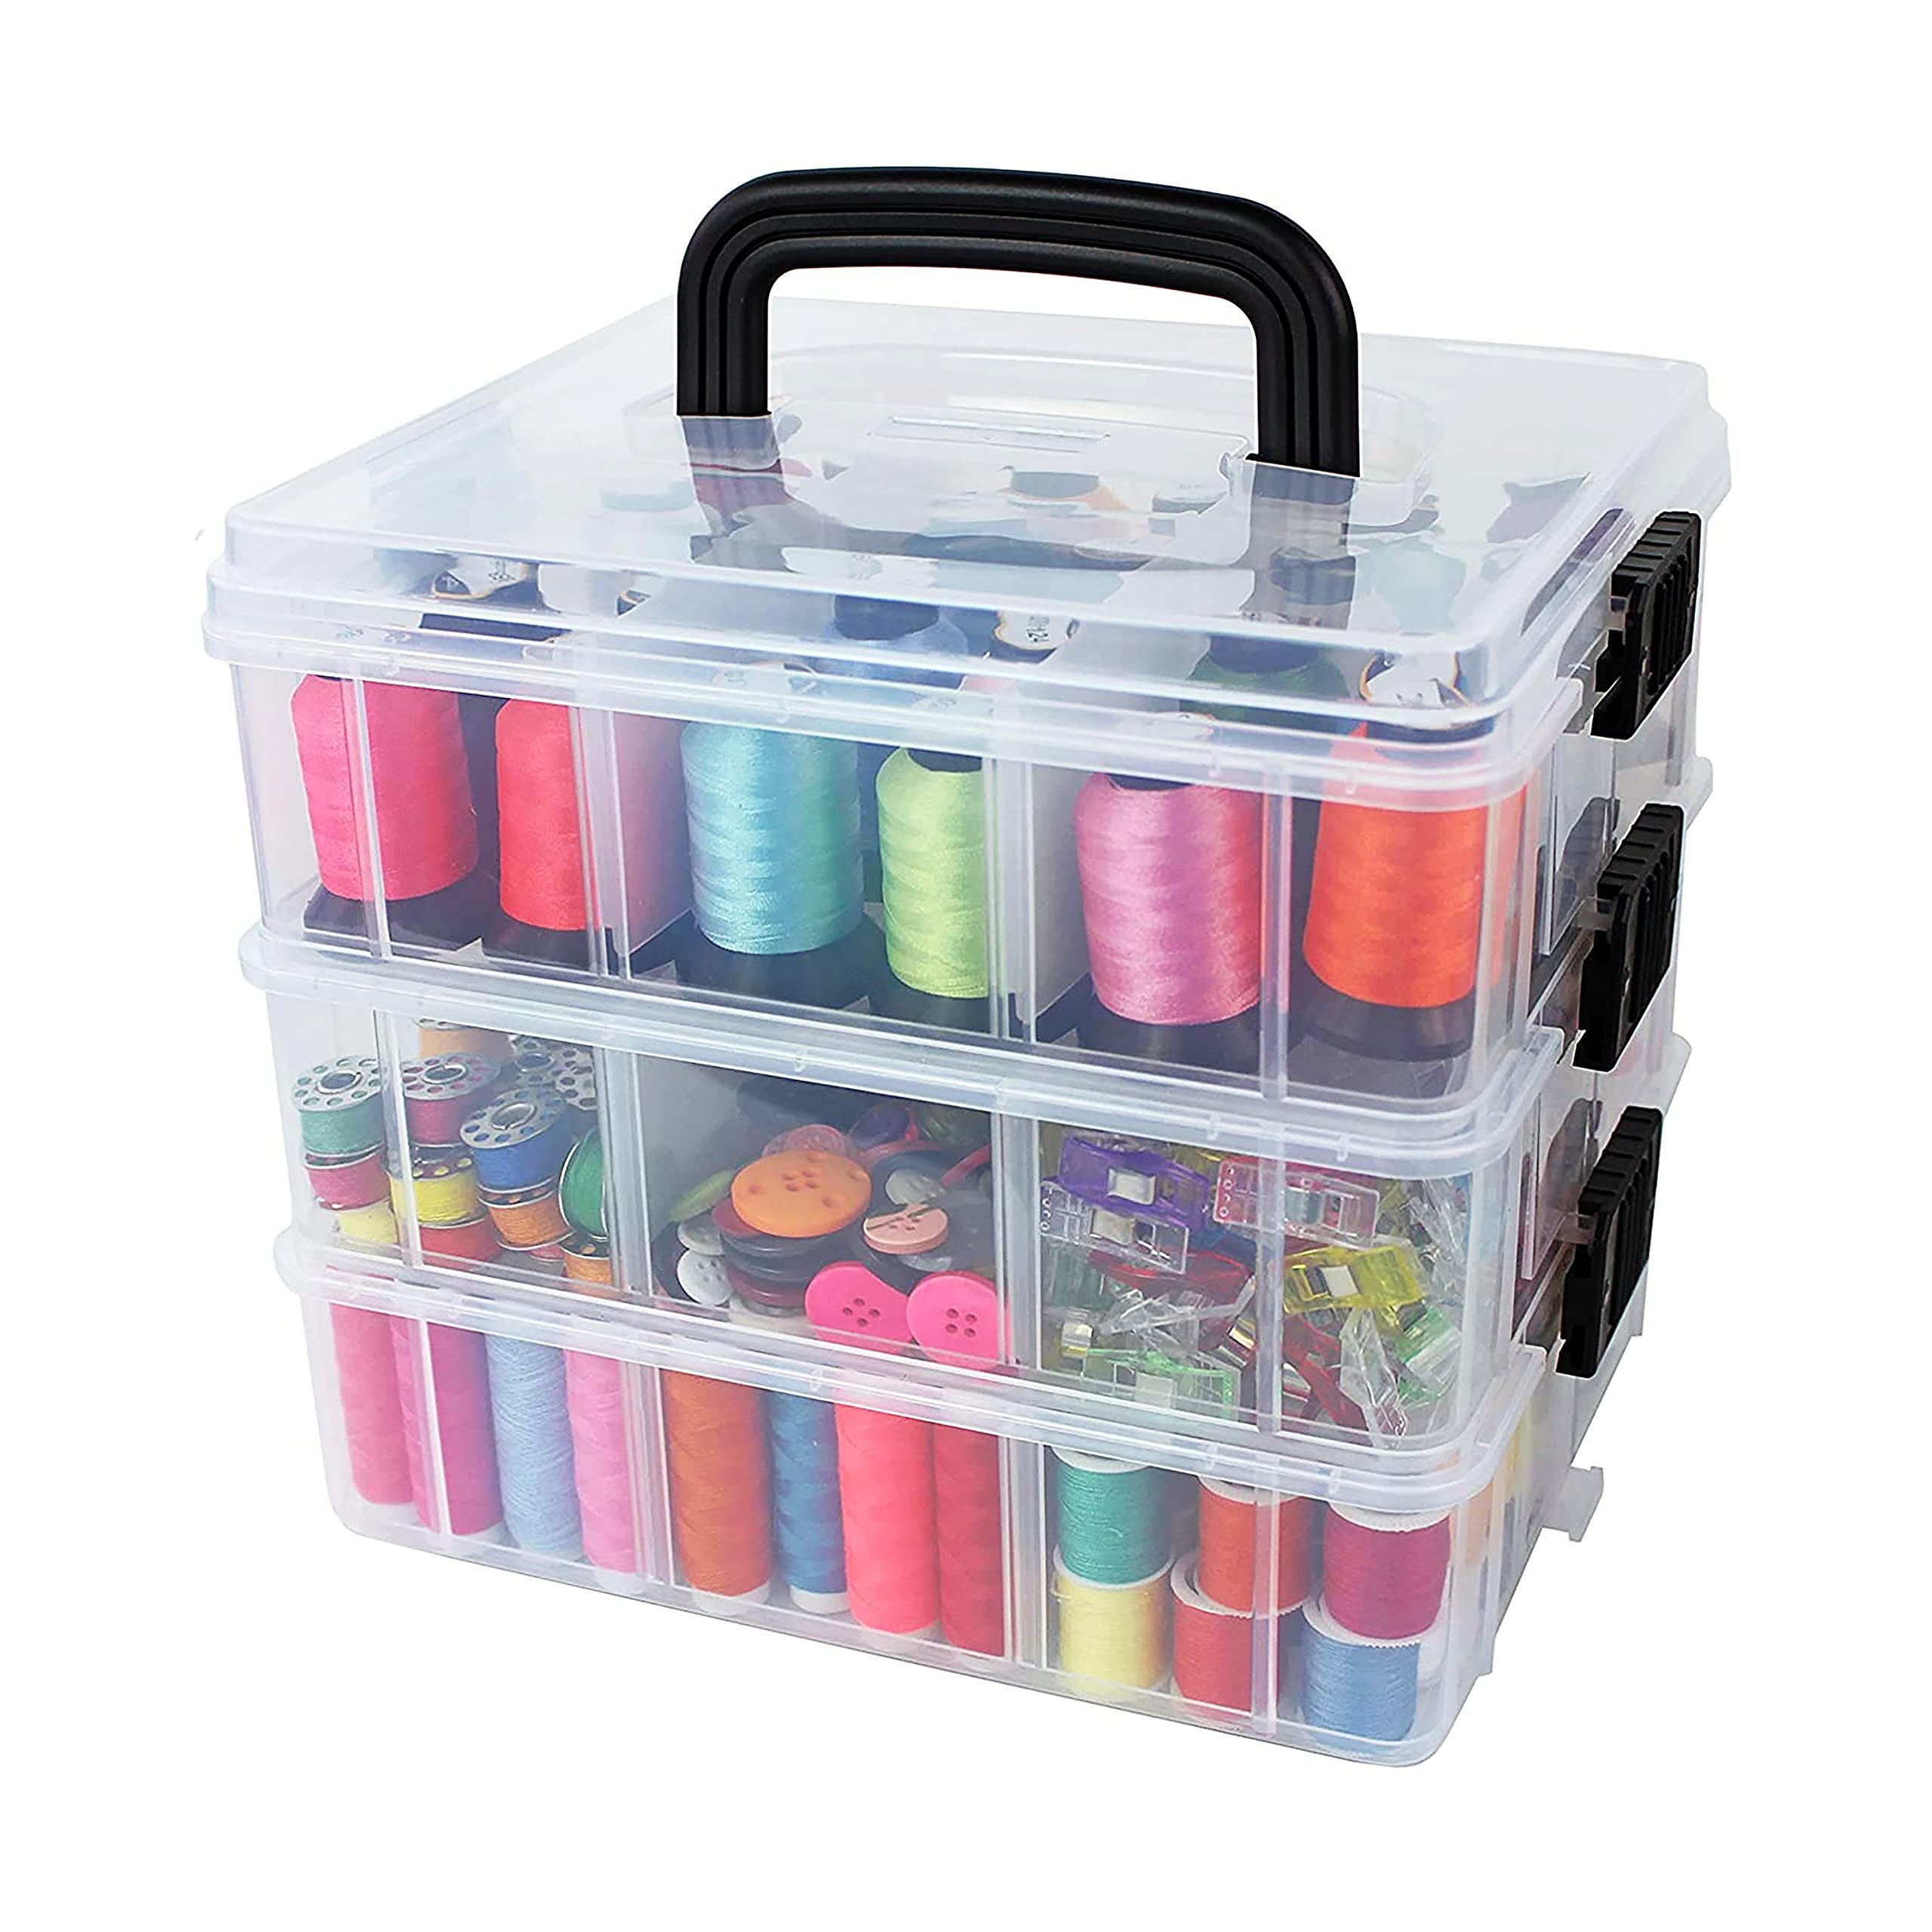 Bins & Things Stapelbox 18 Fächer Aufbewahrungsbox Transparent Deckel, Farblos 3-Tier, 18 Comprt Kunststoff